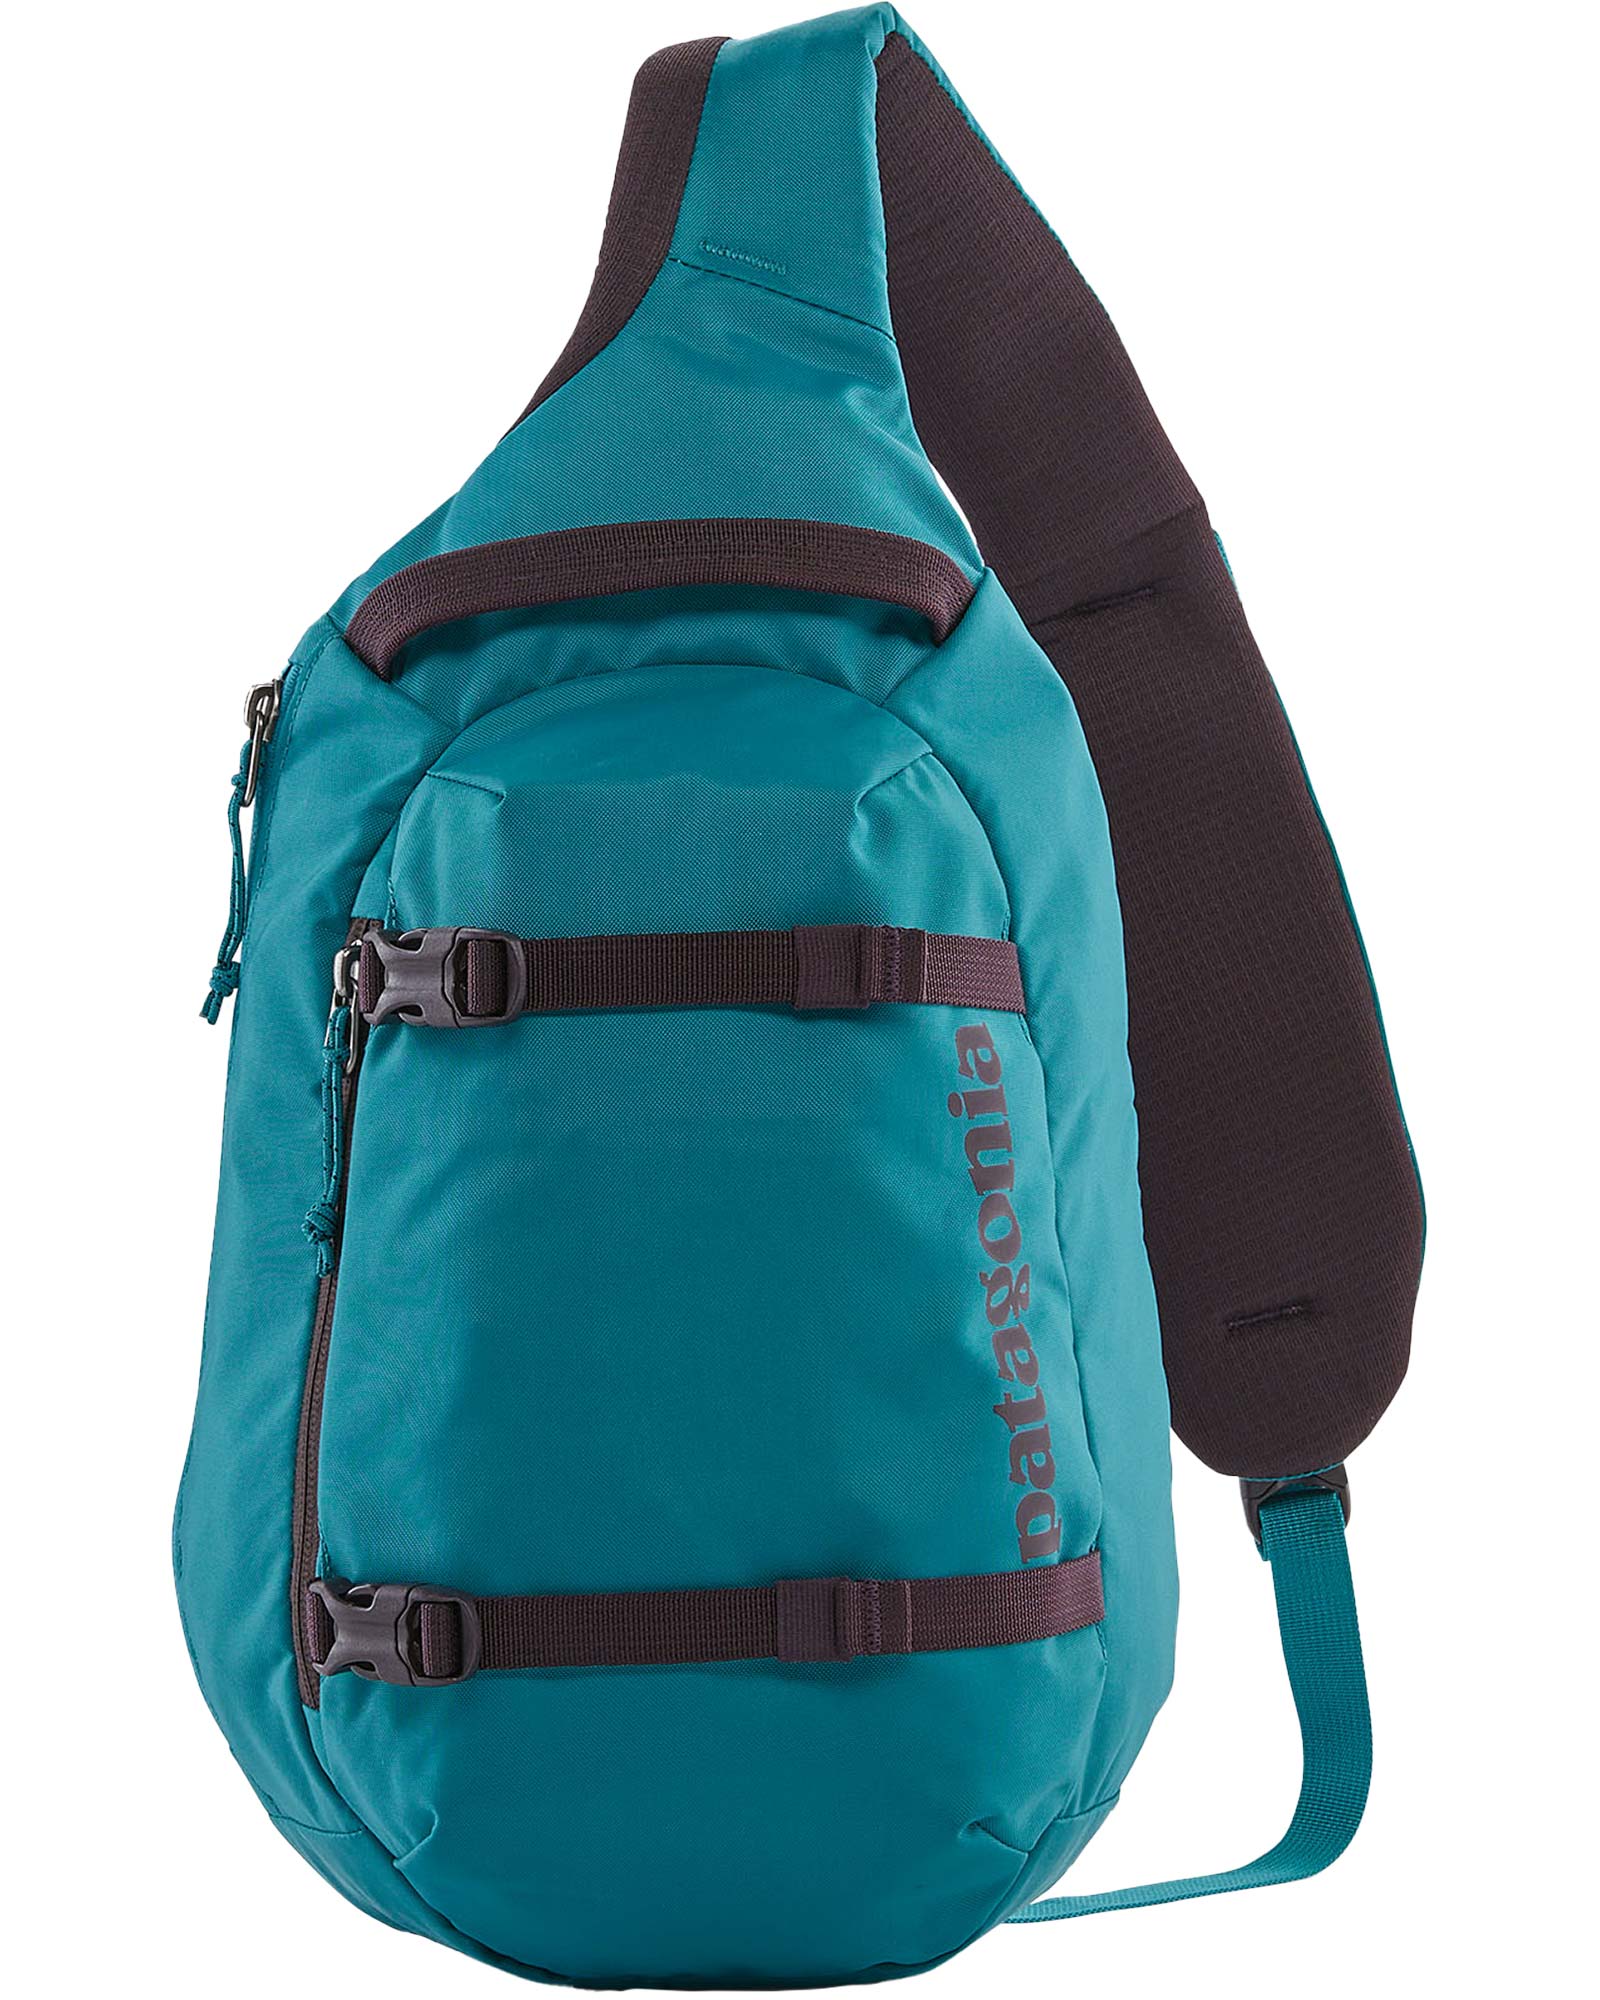 Patagonia Atom Sling Backpack - Belay Blue